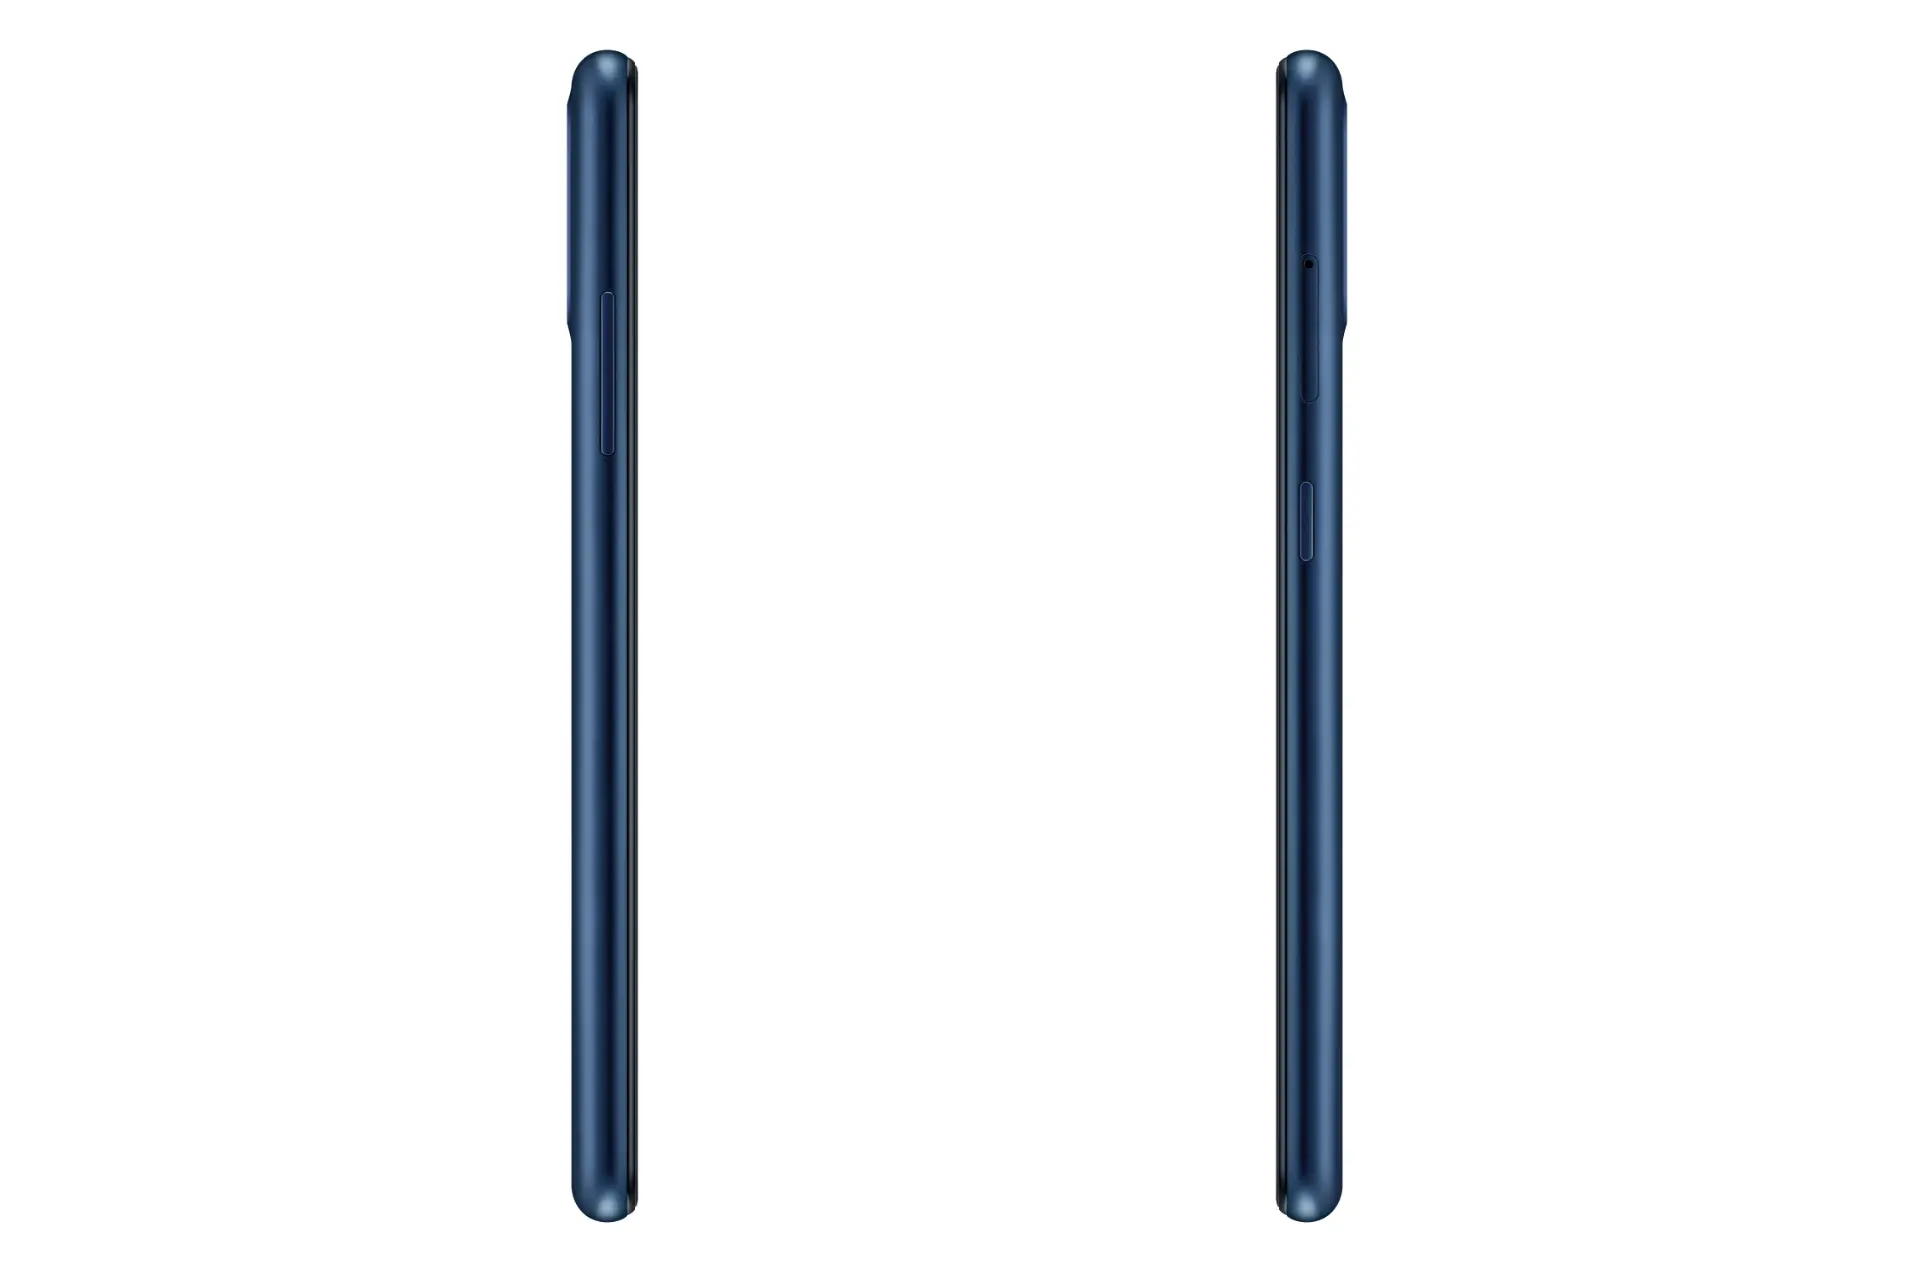 نمای کناری موبایل گلکسی A01 سامسونگ رنگ آبی